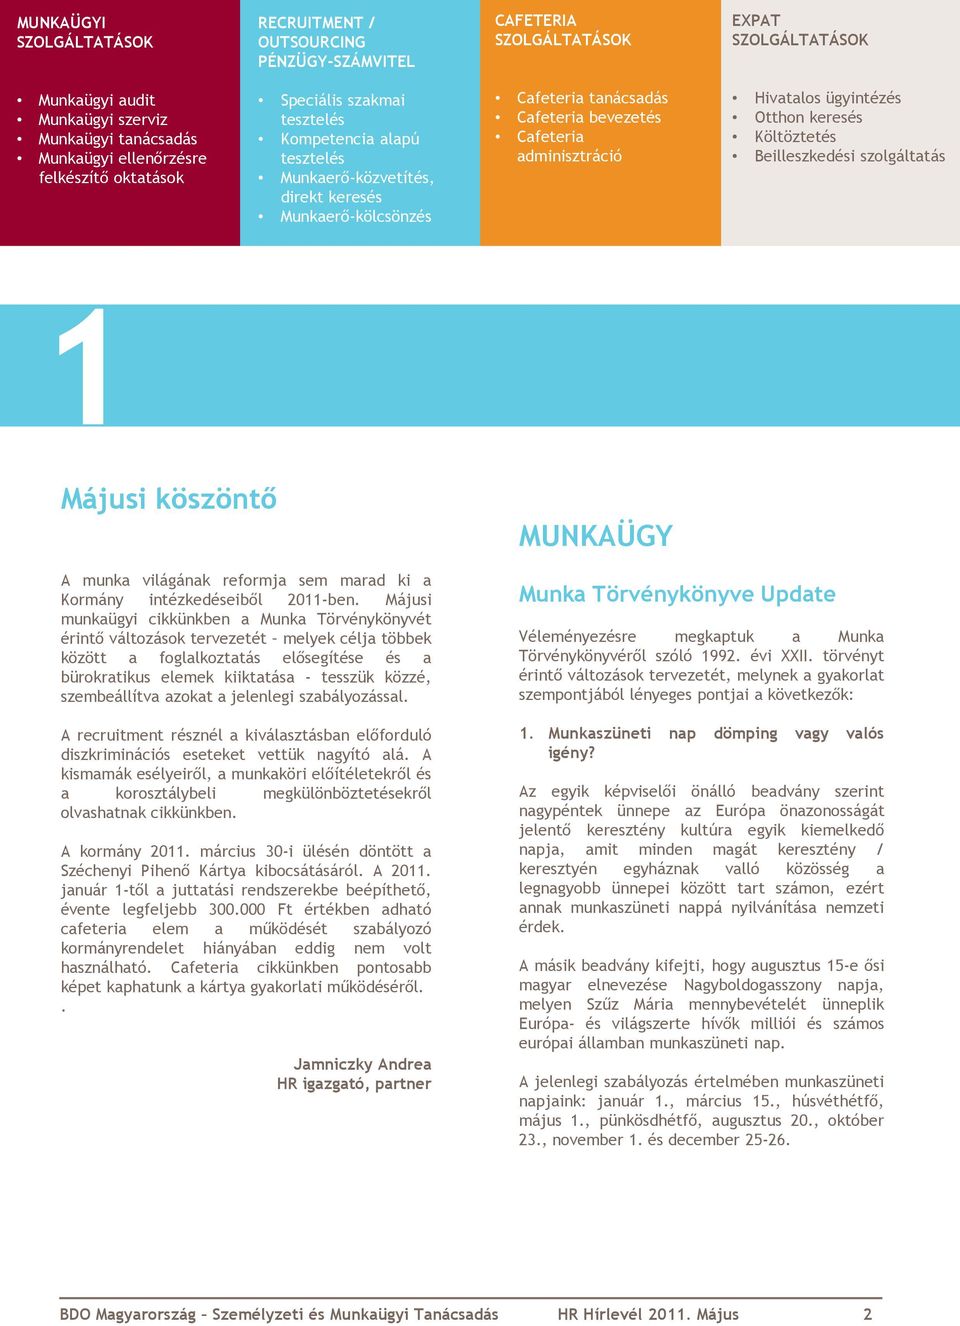 Hivatalos ügyintézés Otthon keresés Költöztetés Beilleszkedési szolgáltatás 1 Májusi köszöntő A munka világának reformja sem marad ki a Kormány intézkedéseiből 2011-ben.